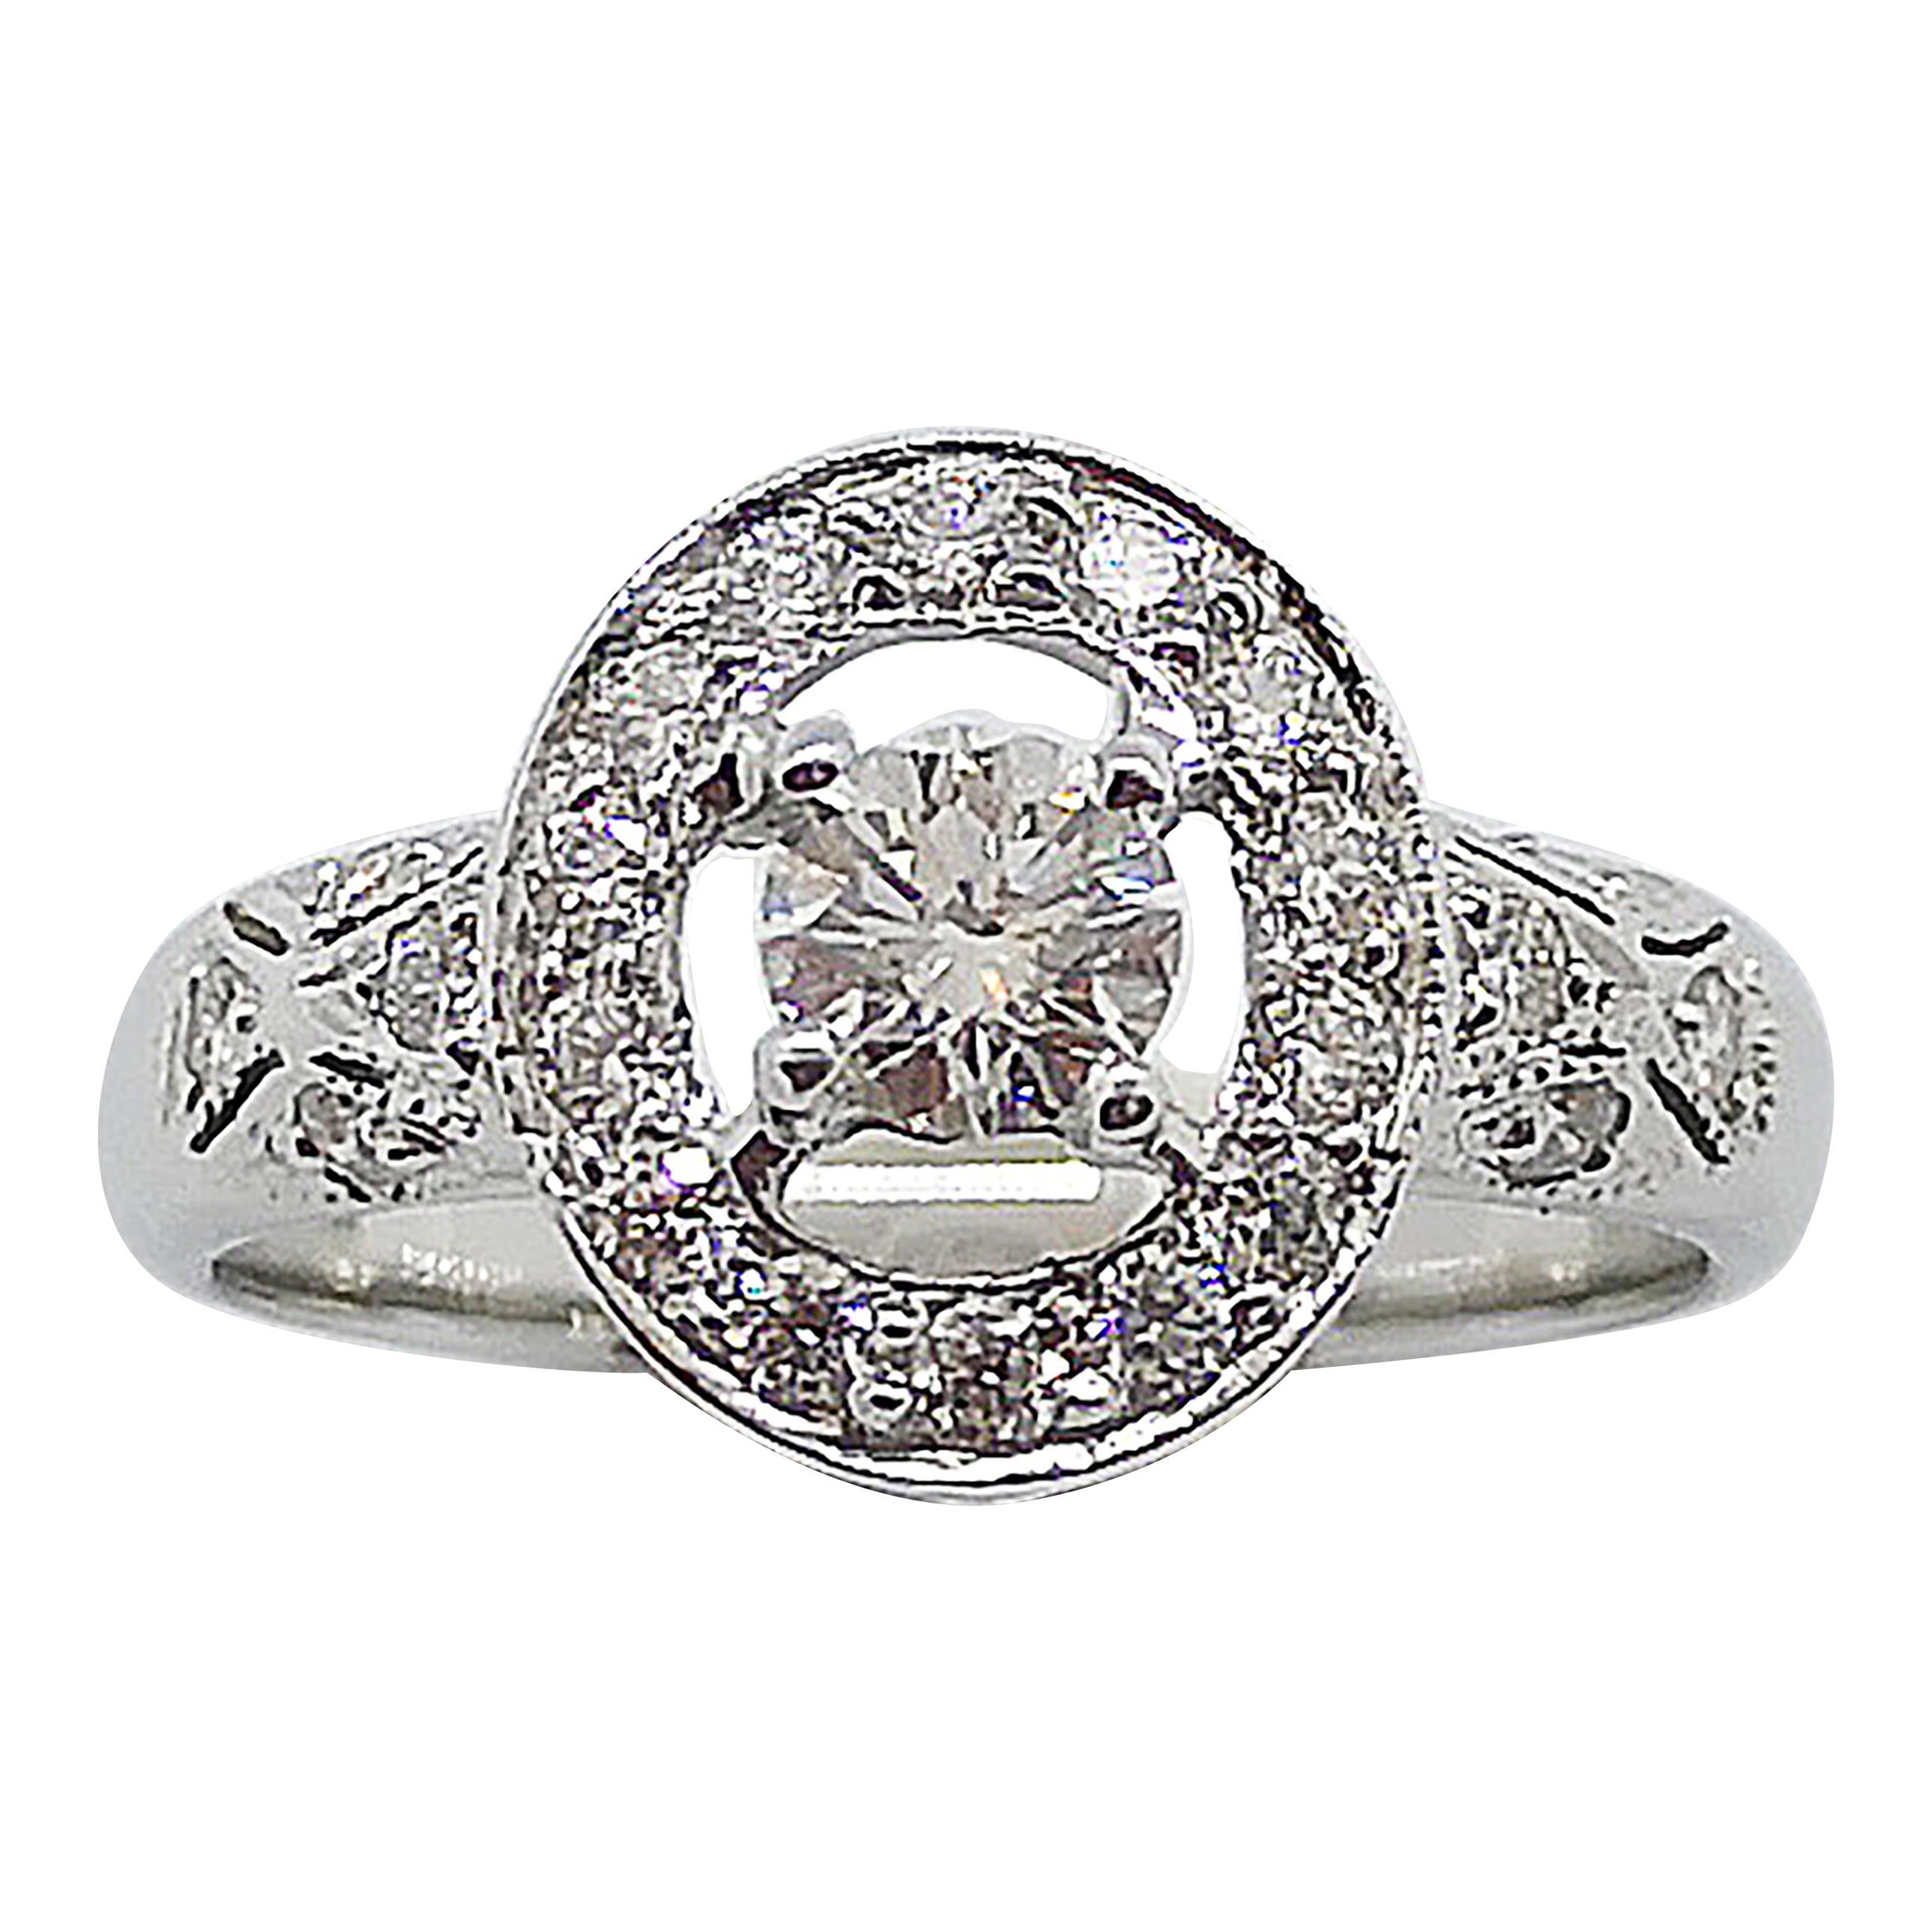 Diamond Ring Set in 18 Karat White Gold Settings